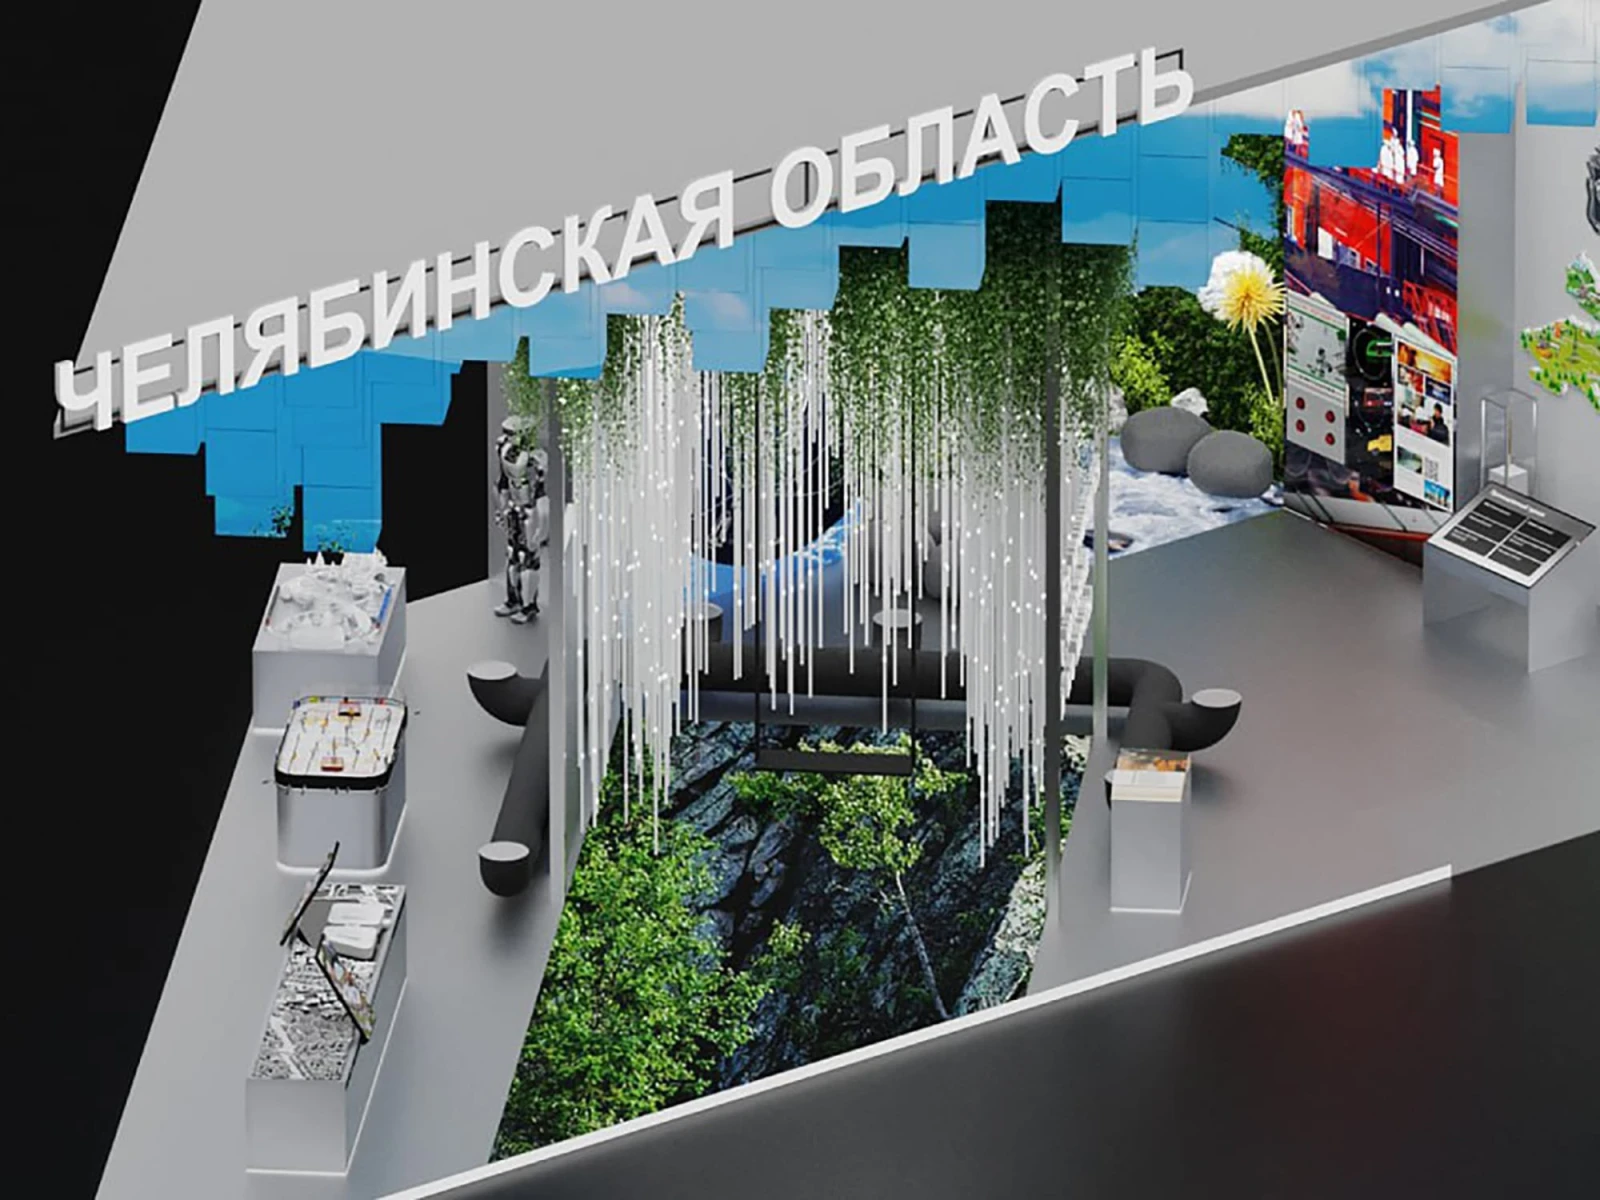 Челябинский стенд покажет красоту региона на выставке "Россия"